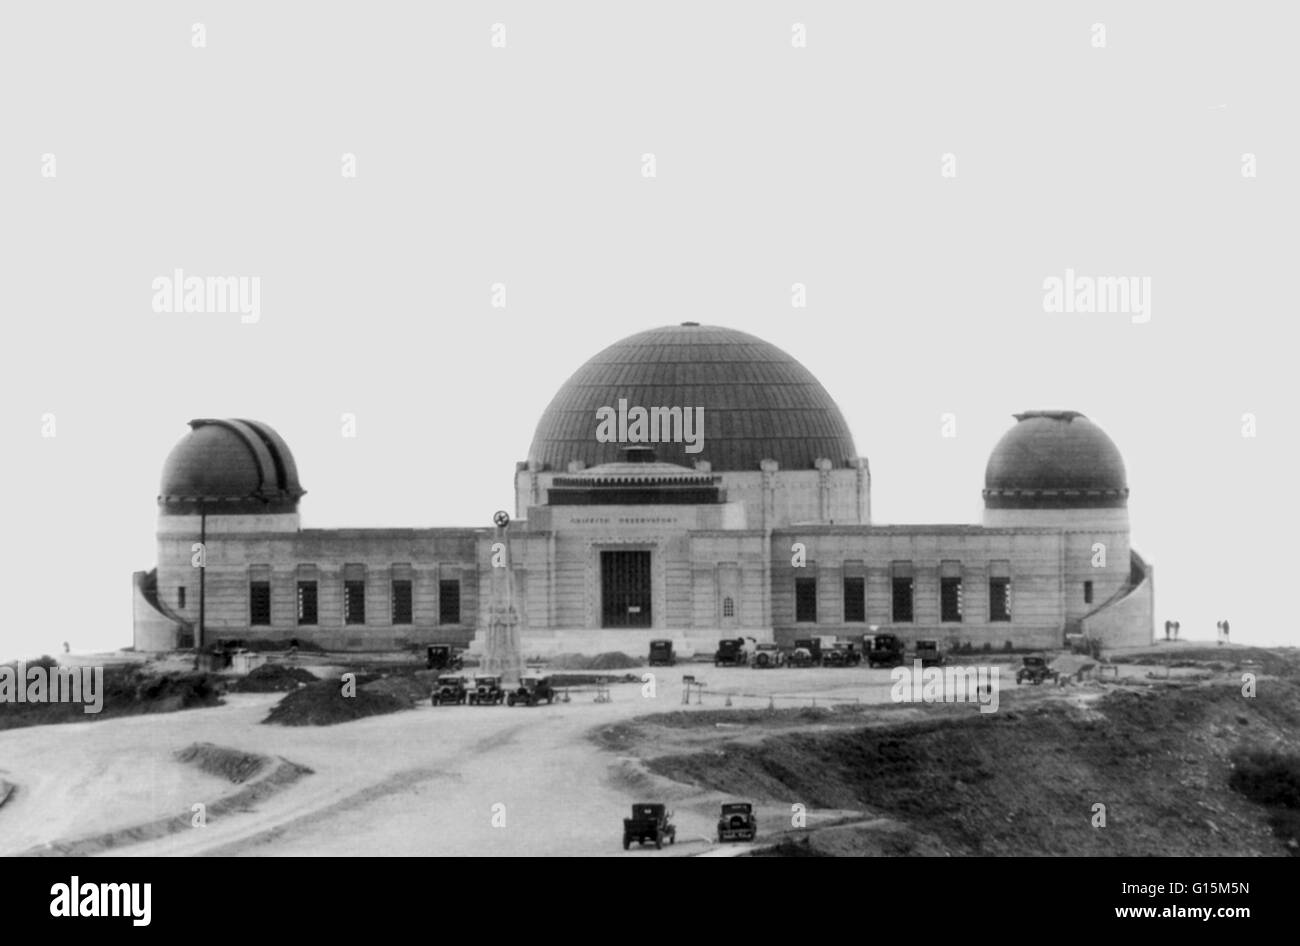 Osservatorio Griffith sul Monte di Hollywood a Los Angeles, fondata nel 1935. Il diritto cupola in rame ospita il telescopio solare, quello di sinistra la Zeiss telescopio rifrattore, e la grande cupola centrale che ospita il teatro del planetario. Foto Stock